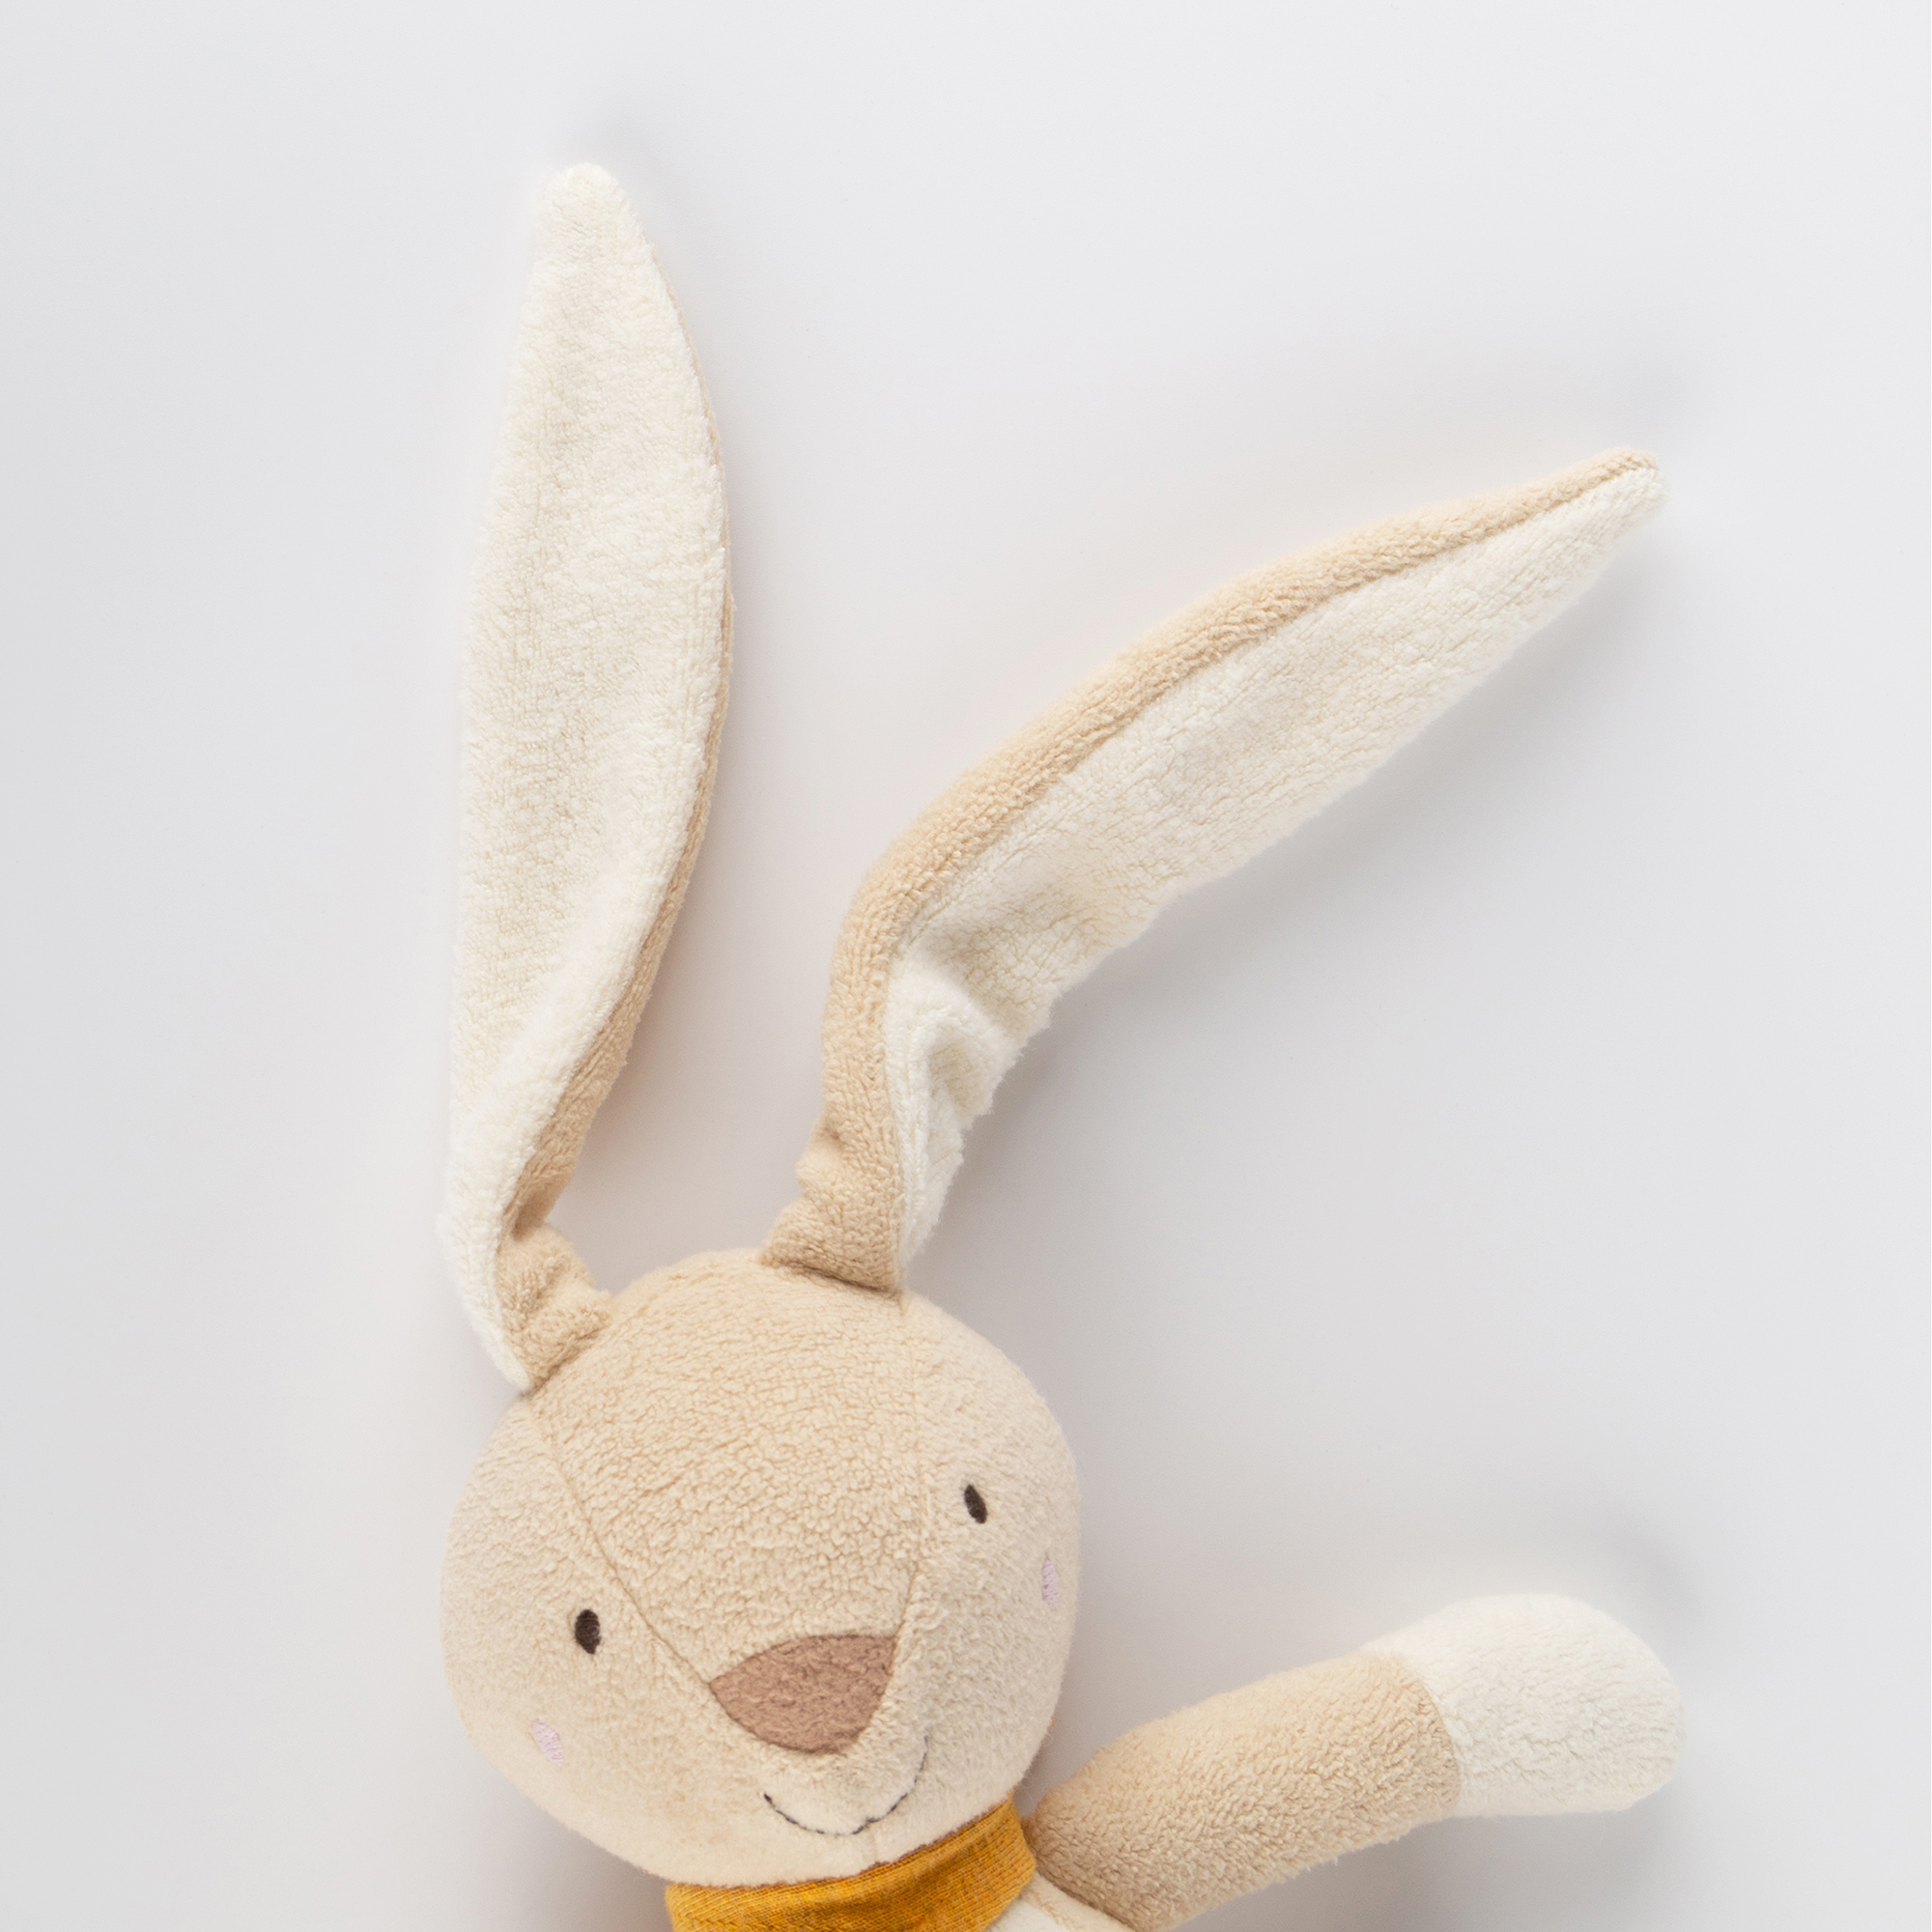 Soft toy rabbit